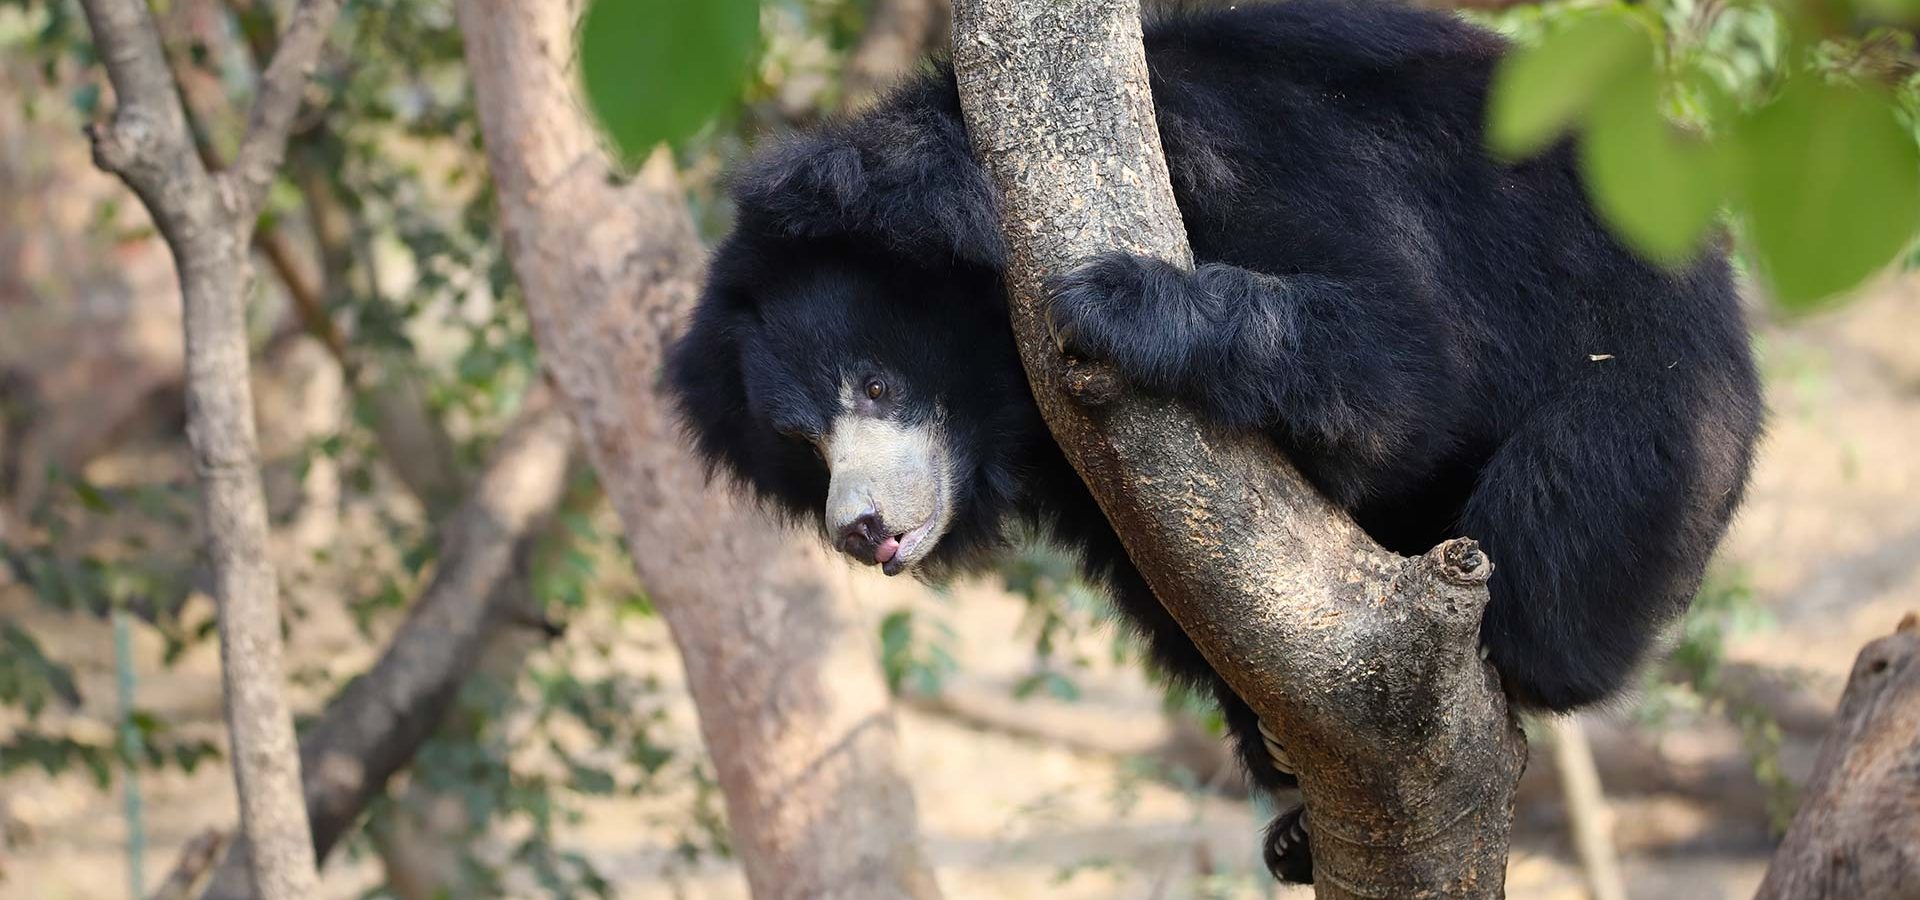 Can Bears Climb Trees?